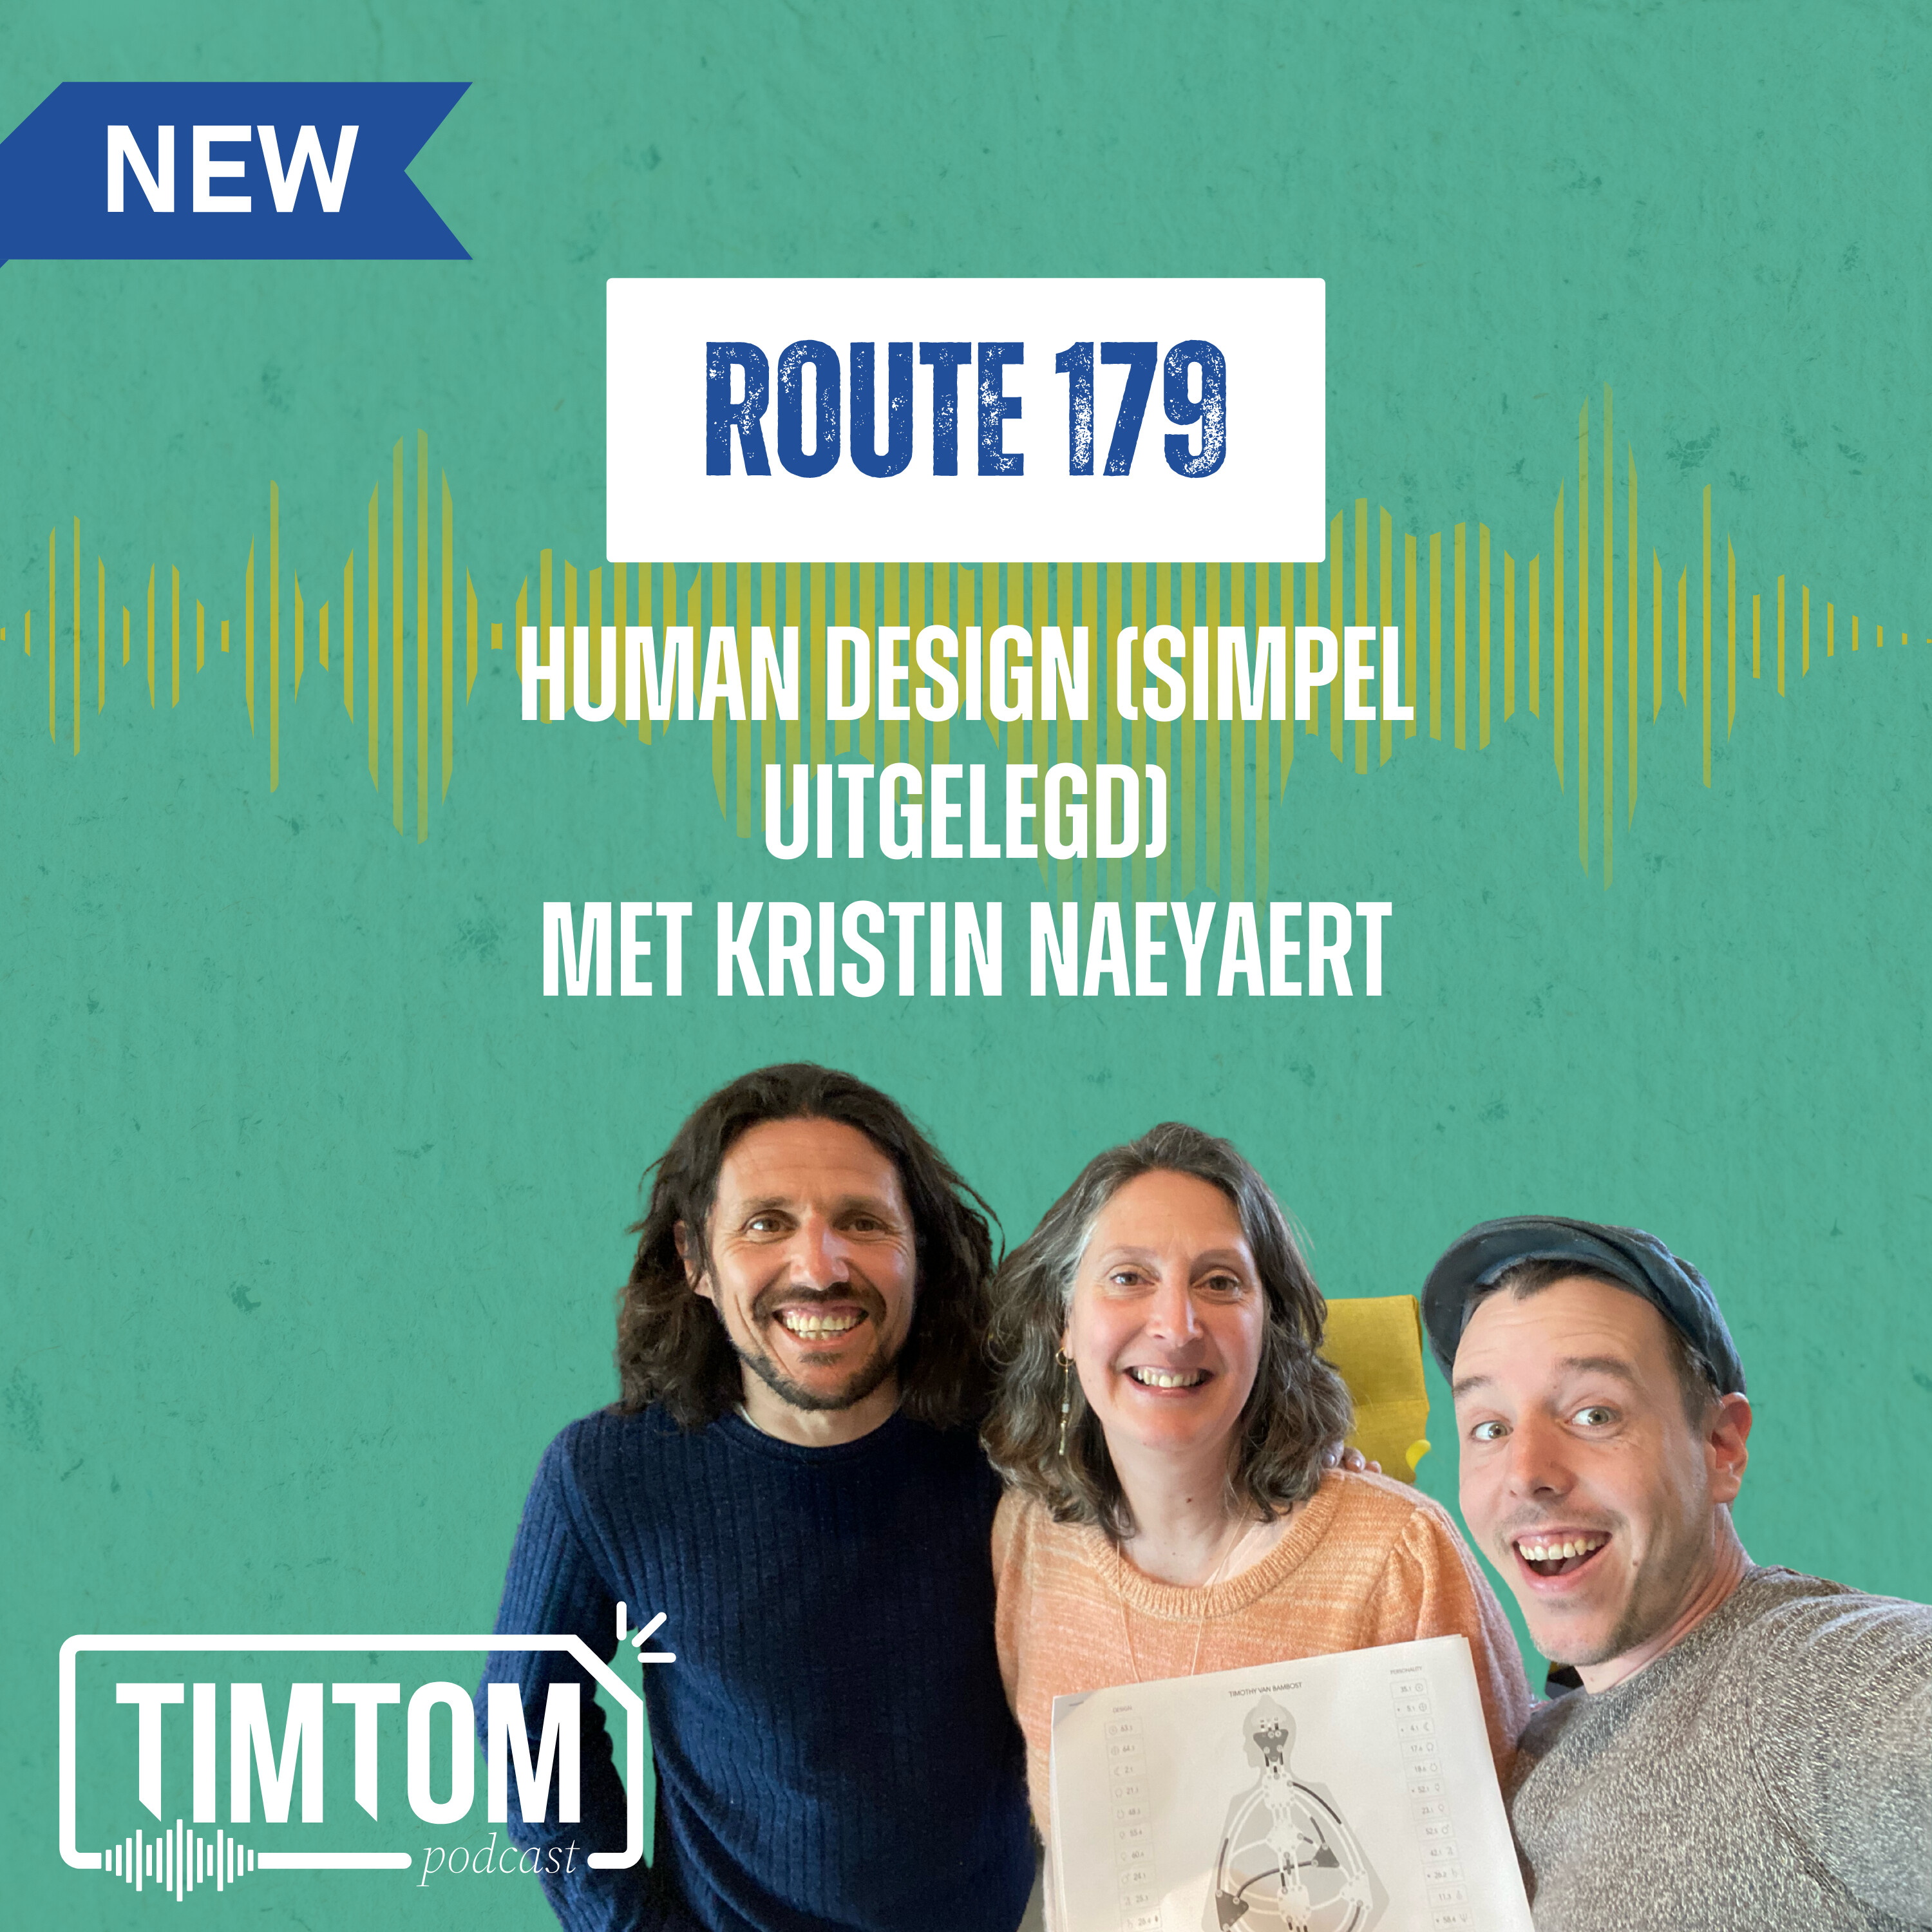 Human Design (simpel uitgelegd) - route 179 met Kristin Naeyaert